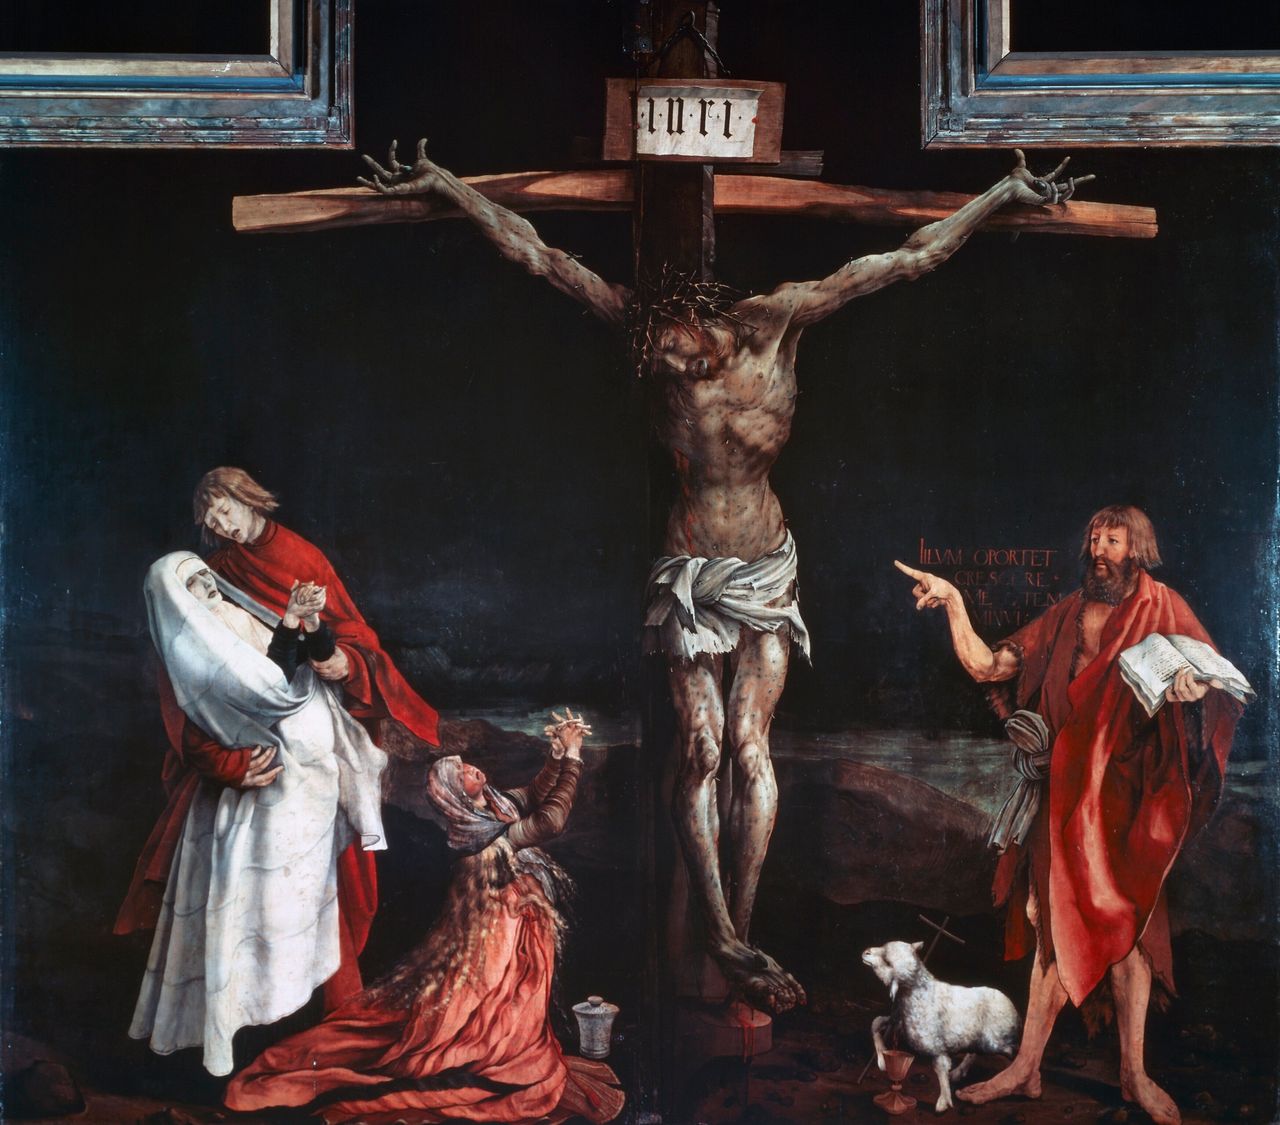 Ματίας Γκρύνεβαλντ, "Η Σταύρωση", πίνακας βωμού, 1510-15, Κολμάρ (Γαλλία).